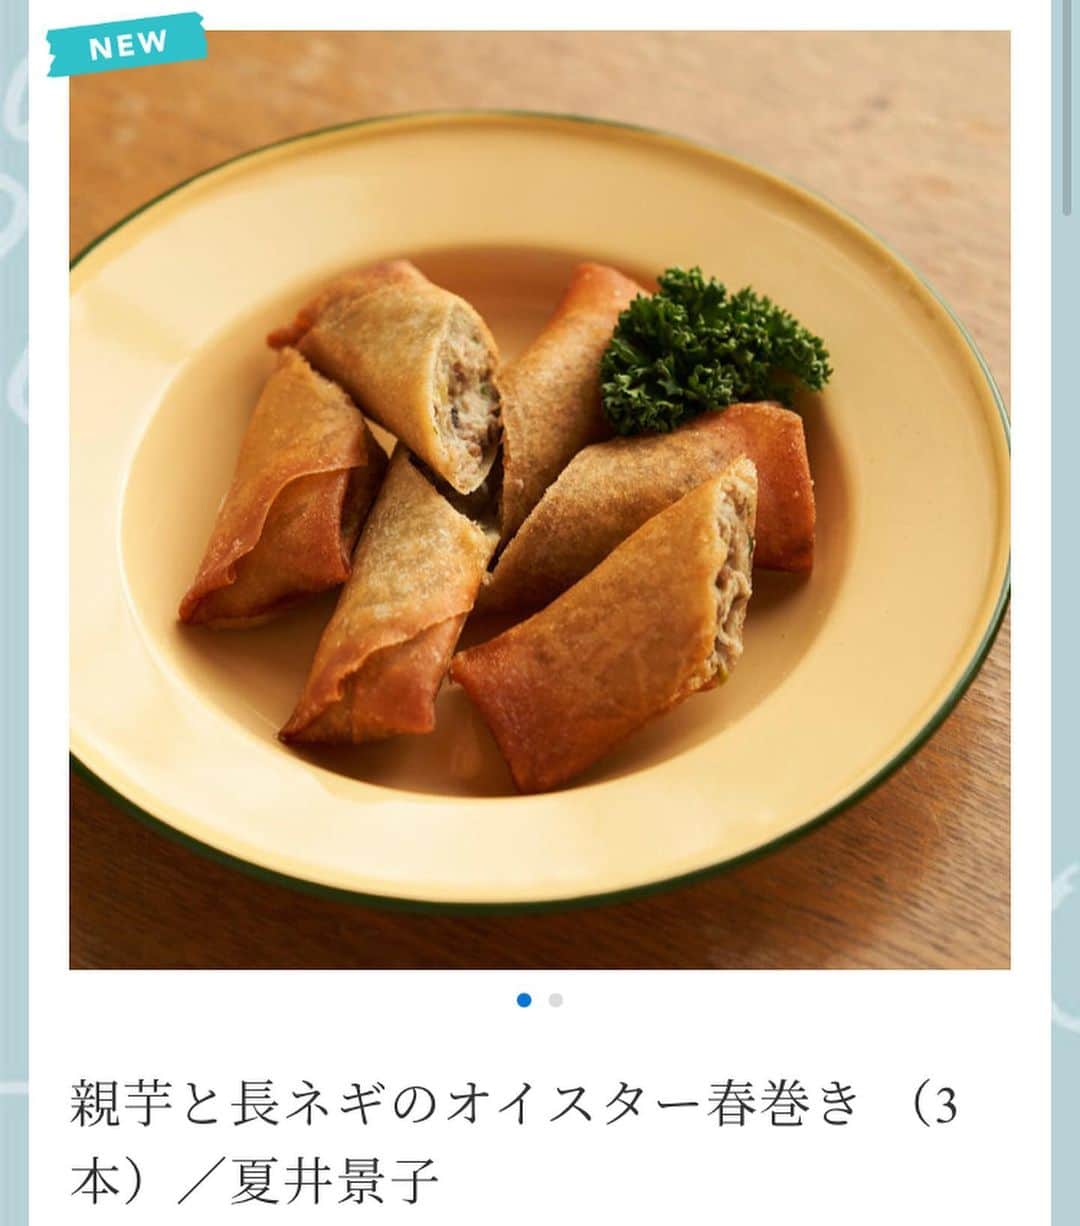 夏井景子のインスタグラム：「【冷凍のお惣菜販売始めました】 個々で活動している料理家さんやケータラーさんに日本全国の食材をつなぎ、家庭で気軽に楽しめるお惣菜に加工、冷凍してお届けしているプロジェクト『catering for me!』(@catering_for_me )に参加させていただくことになりました。 まずは2品販売しています。 ・親芋(里芋)と長ネギの春巻き ・鶏肉とごぼうの具沢山トマトシュー  です。 春巻きに使った親芋は、埼玉の見沼田んぼの無農薬親芋で、とてももちっとしてて1本でボリュームがある春巻きになっています。  トマトシチューは、忙しい朝やお昼にこれ1品で満足するような具沢山のトマトシチューです。 コンソメなどは使用せずに、しいたけと昆布のお出汁だけで仕上げた優しい味です。  他にもサイトには、料理家さんやケータラーさんの美味しいお惣菜が沢山あるので、ぜひ @catering_for_me から色々見ていただけたら嬉しいです☺️  今日と明日(2/6.7)は送料300円引のキャンペーンやっています〜！  みなさんの日々のごはんのお役に立ちますように。。  春巻きの写真とトマトシチューの写真はフォトグラファーの神ノ川千早さん(@chihayak )に撮っていただきました✨✨」